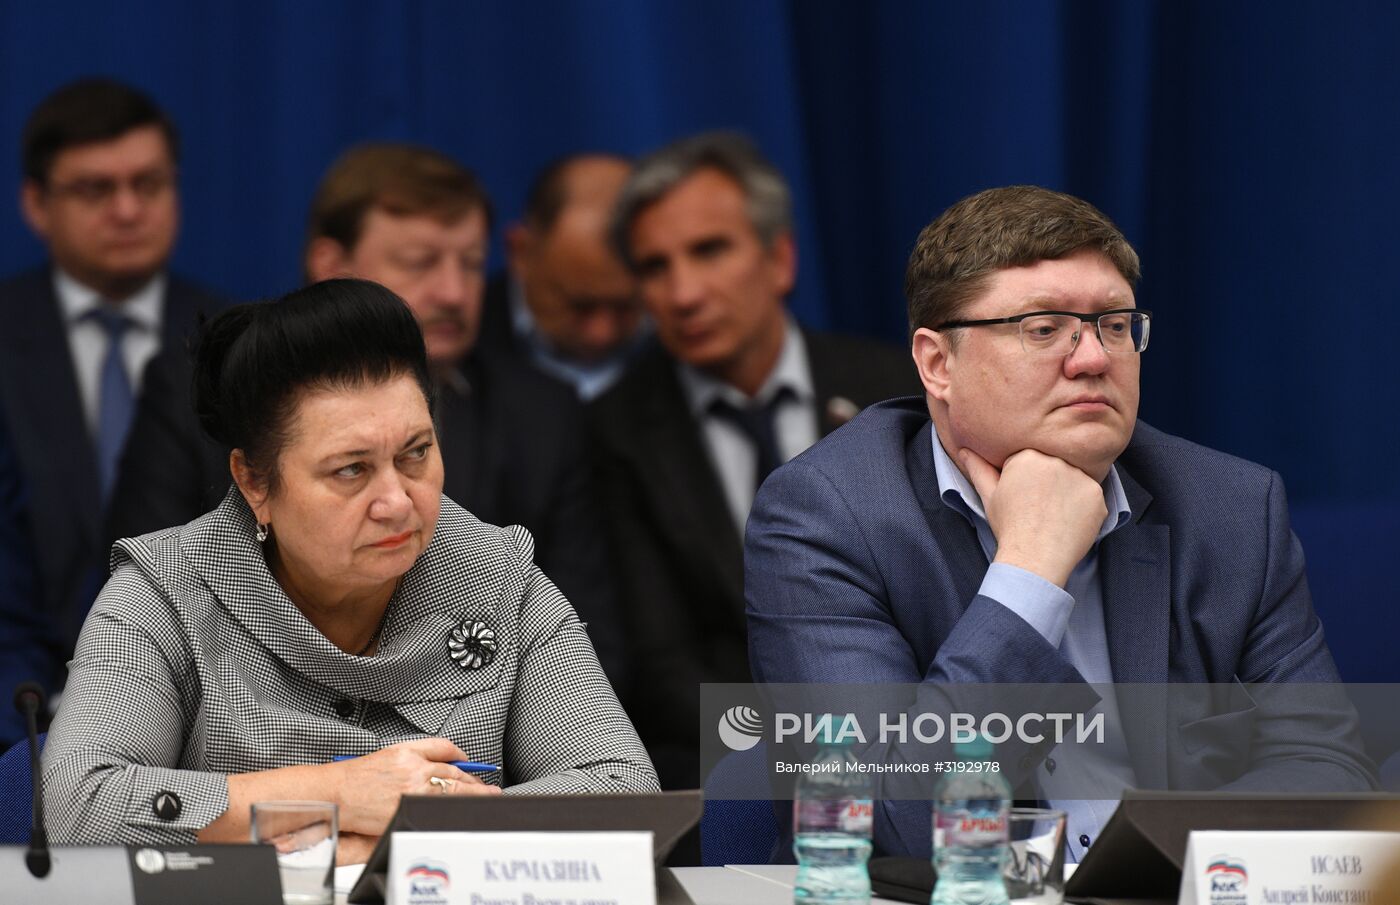 Расширенное заседание президиума генерального совета партии "Единая Россия"